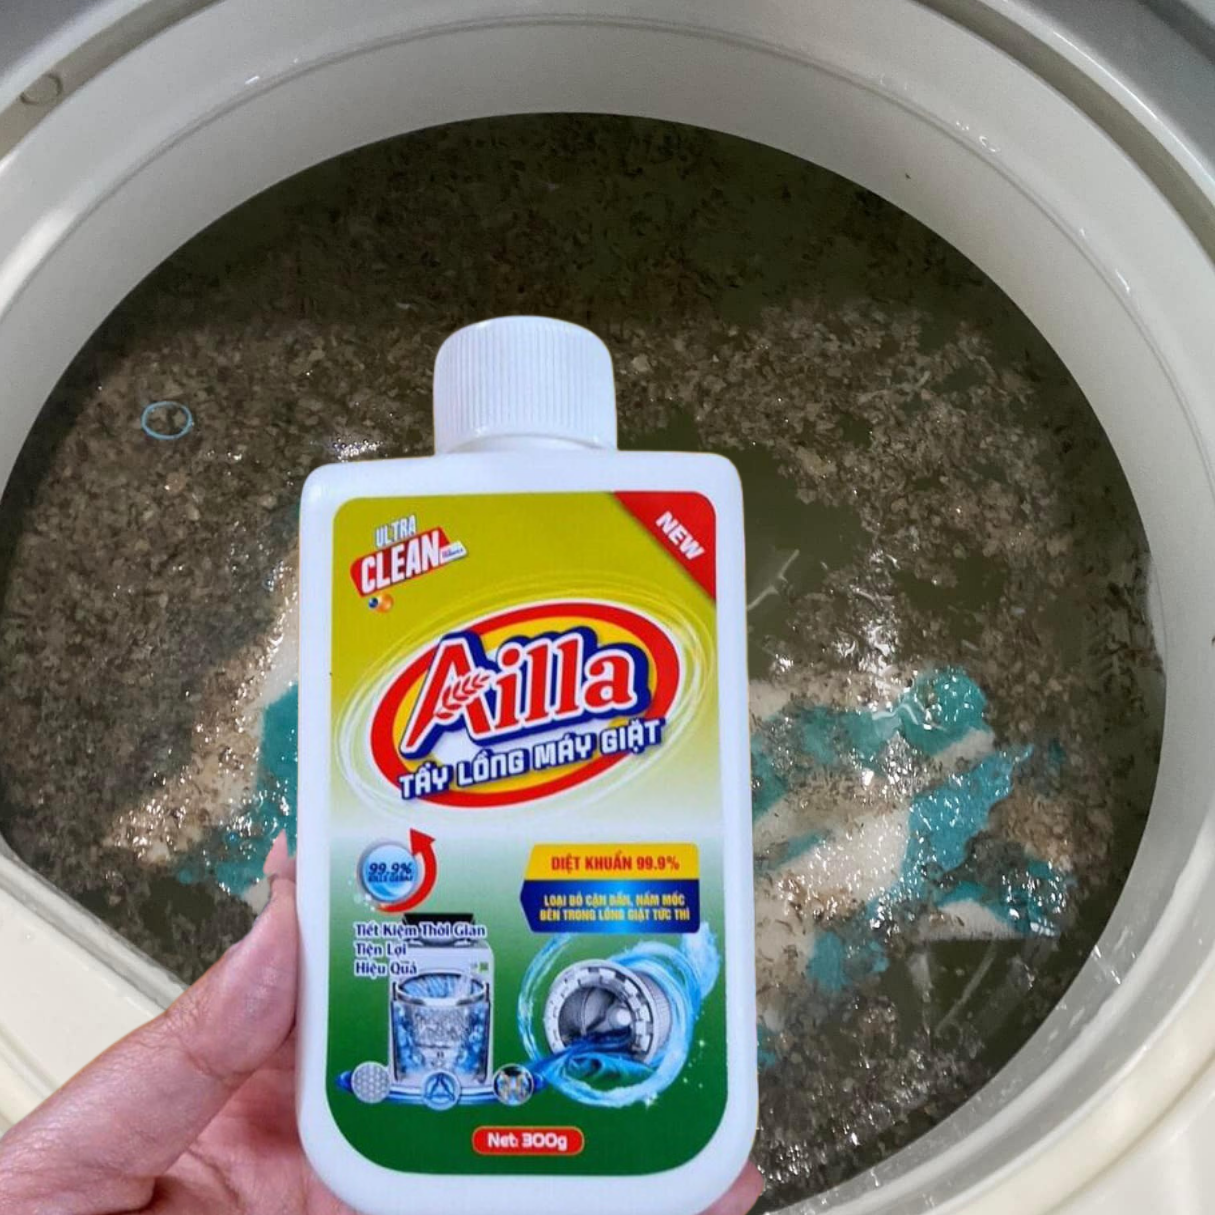 Bột tẩy lồng máy giặt Ailla 300g, loại bỏ nhanh chóng nấm mốc, vi khuẩn, phù hợp mọi loại máy giặt